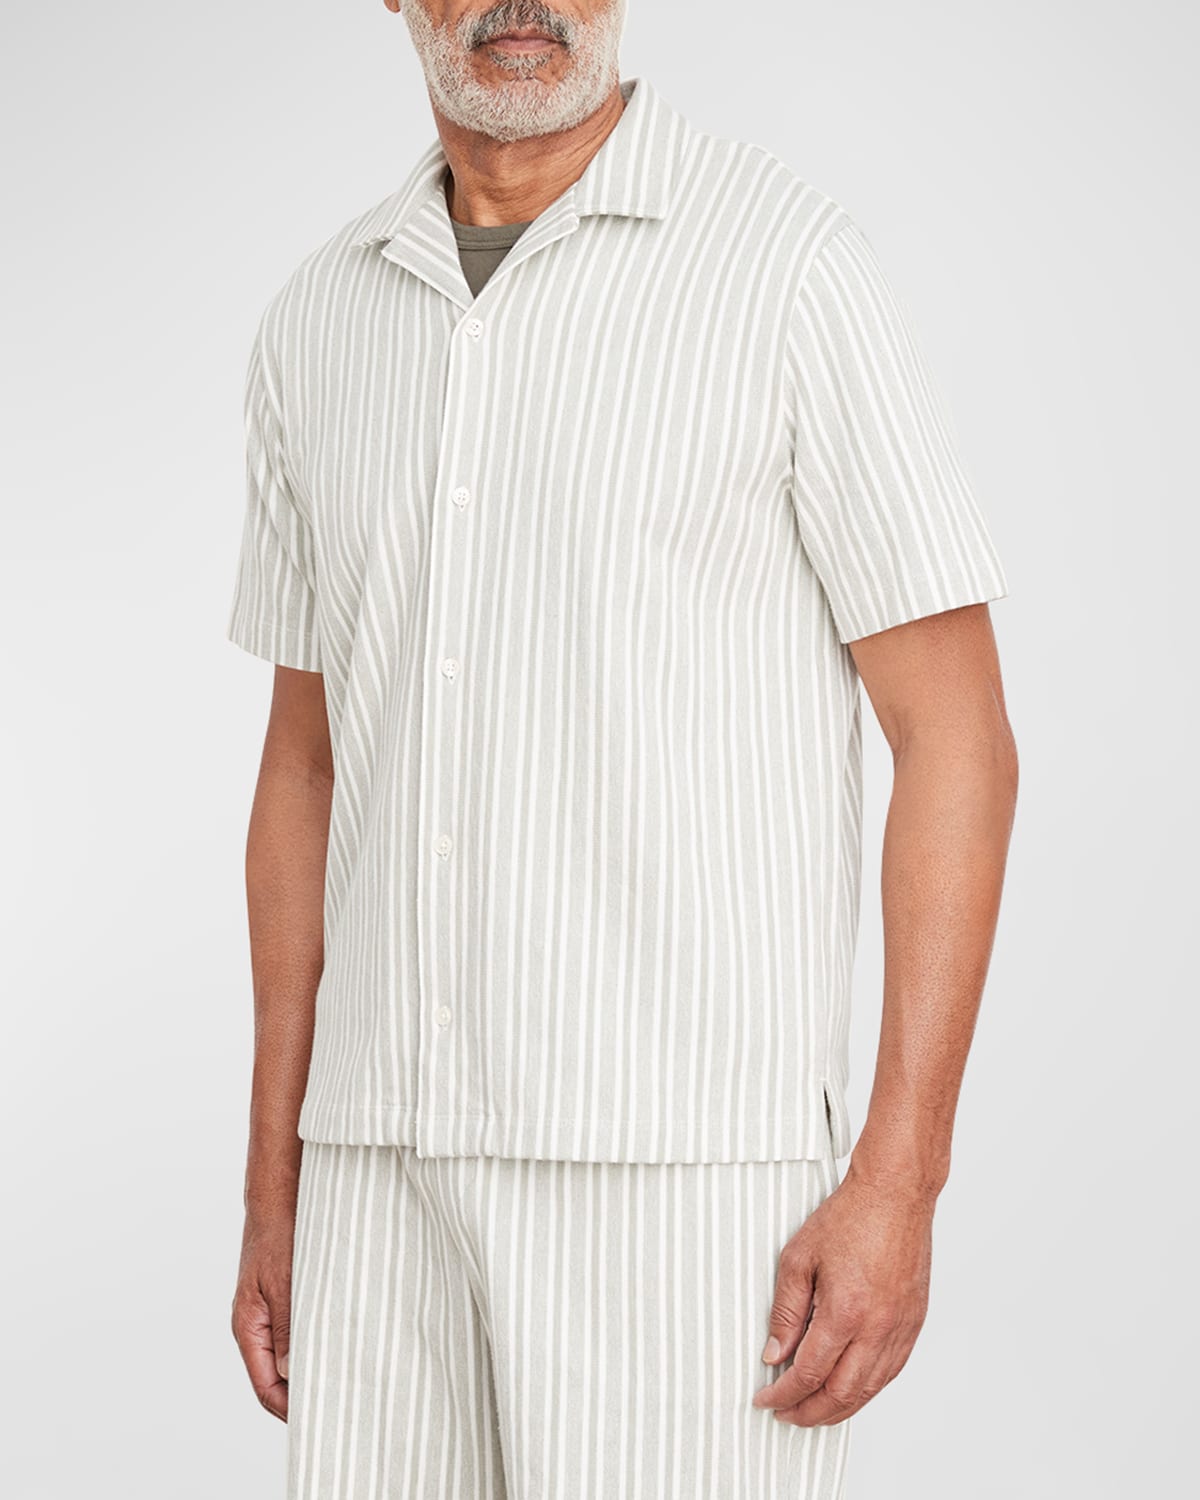 Men's Cabana Stripe Short-Sleeve Shirt